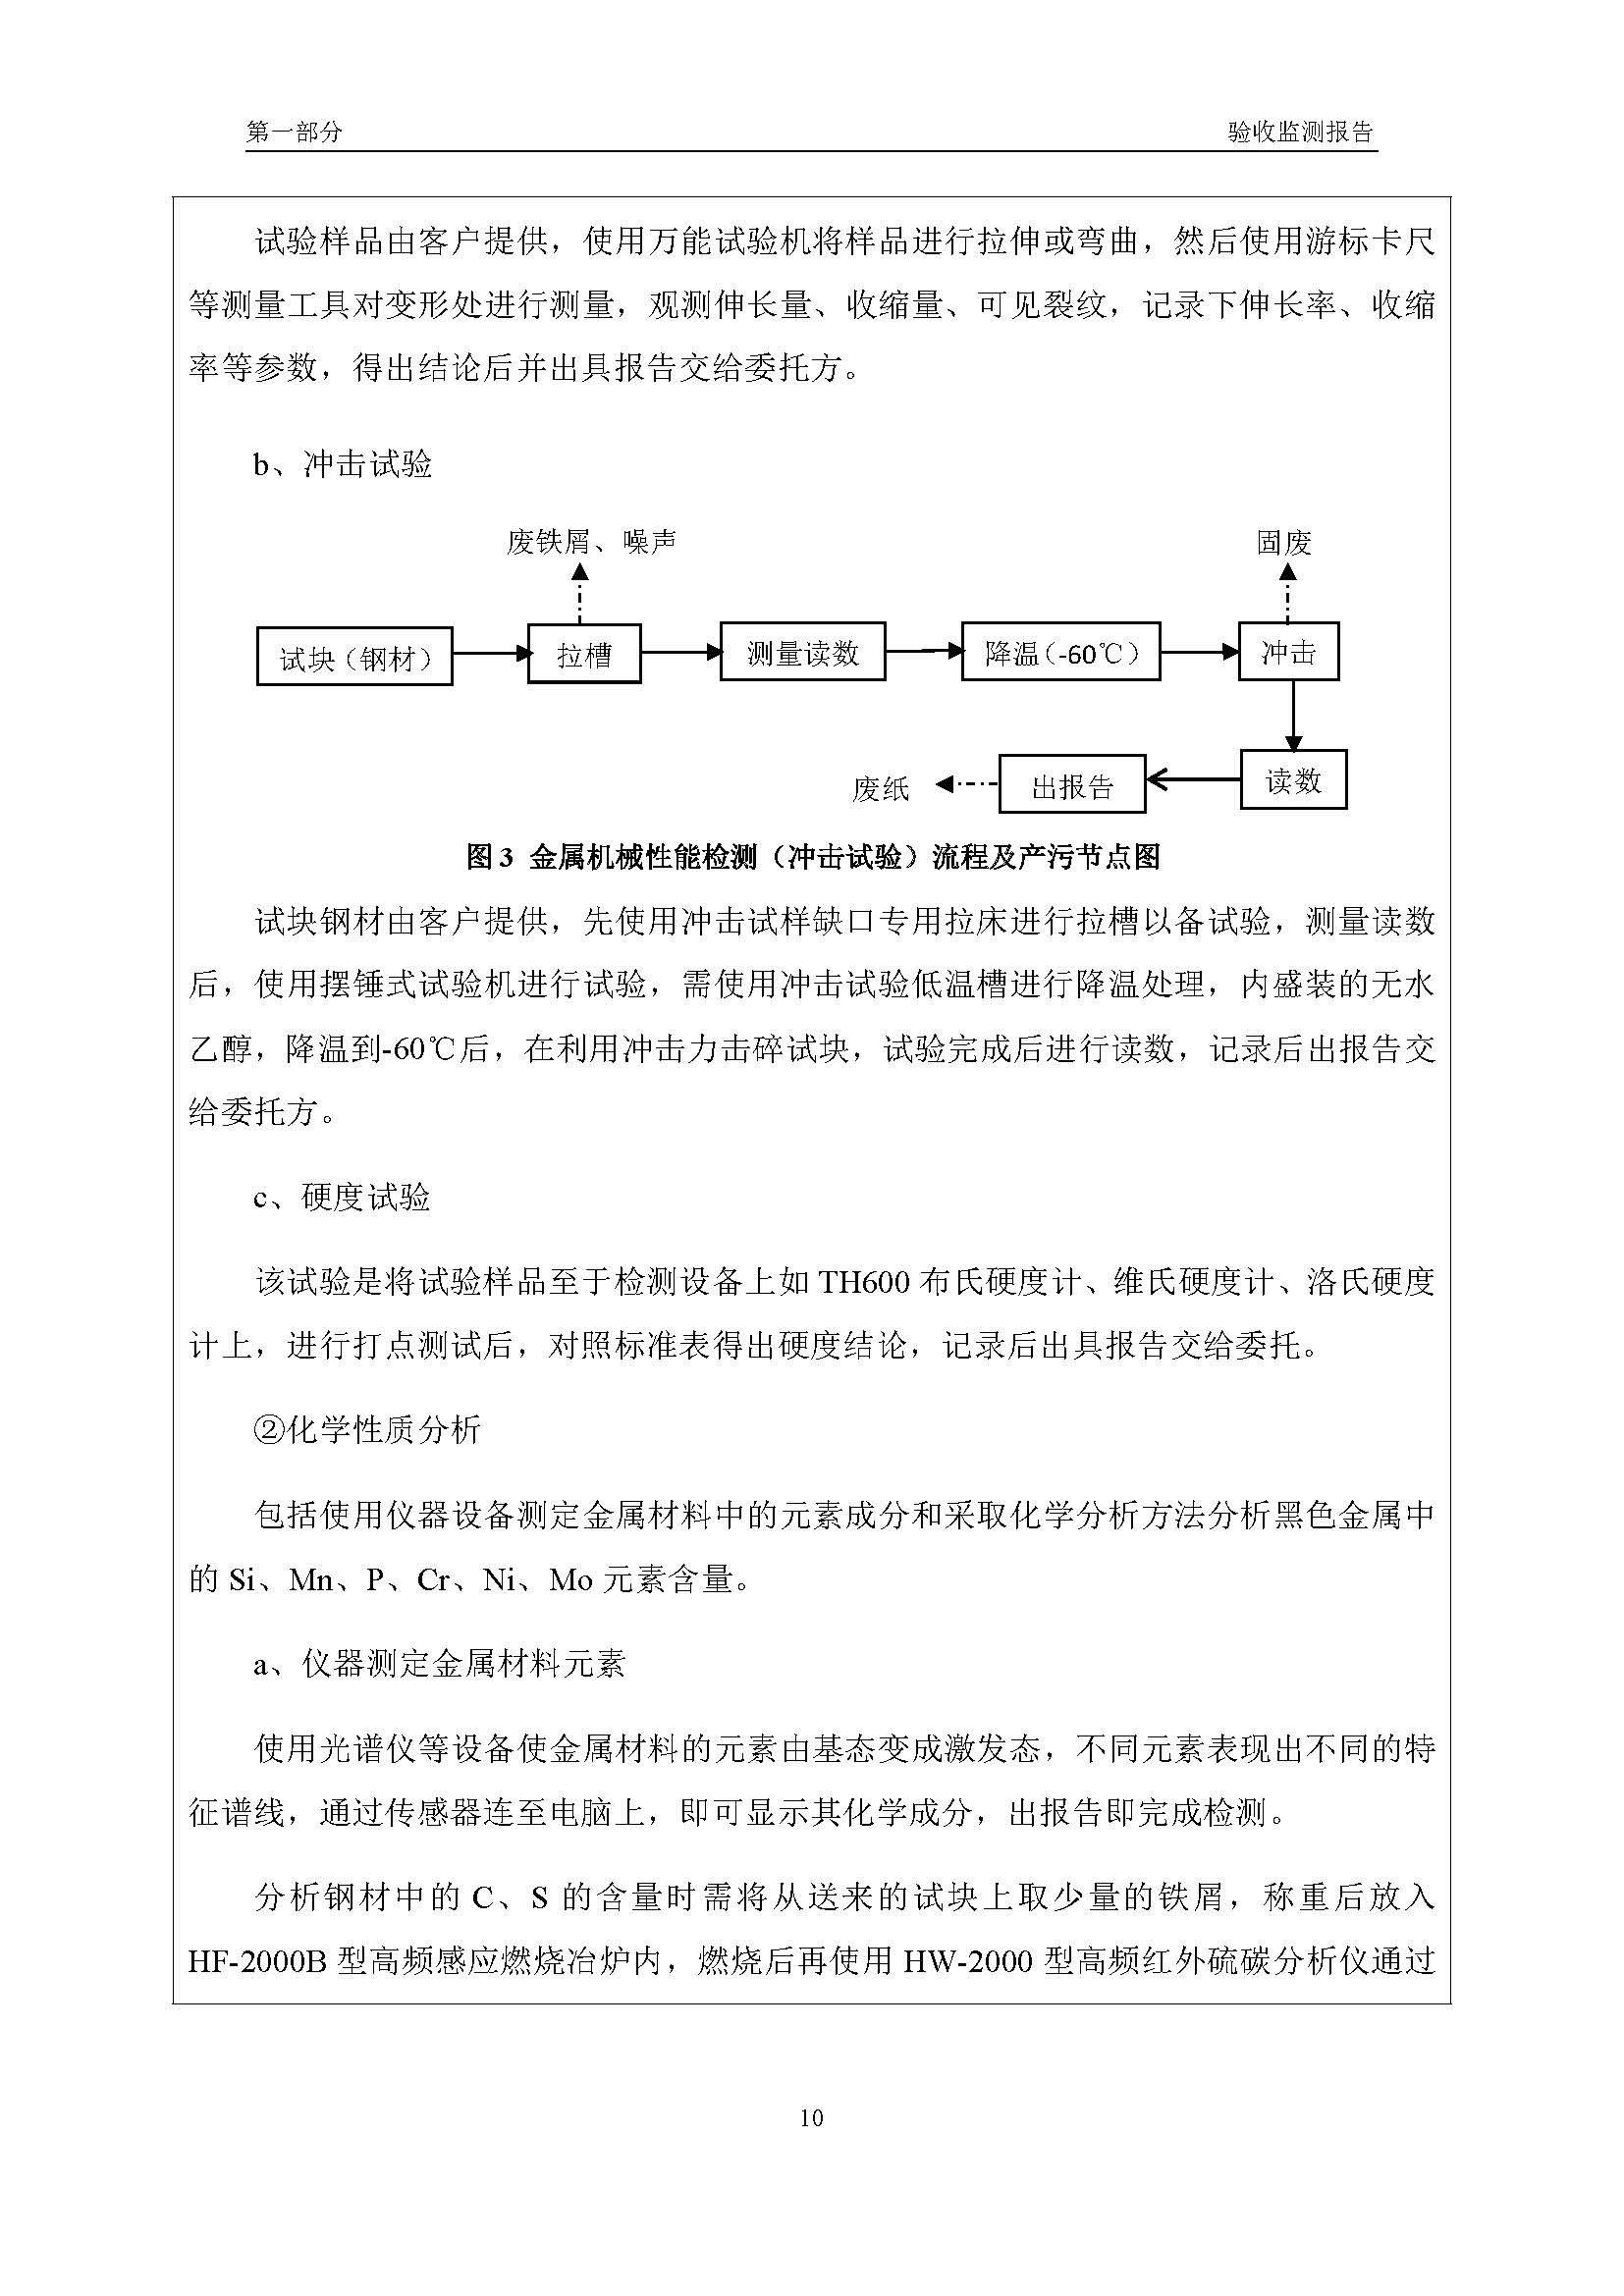 汉正检测环评验收报告 2018.05.31_页面_12.jpg